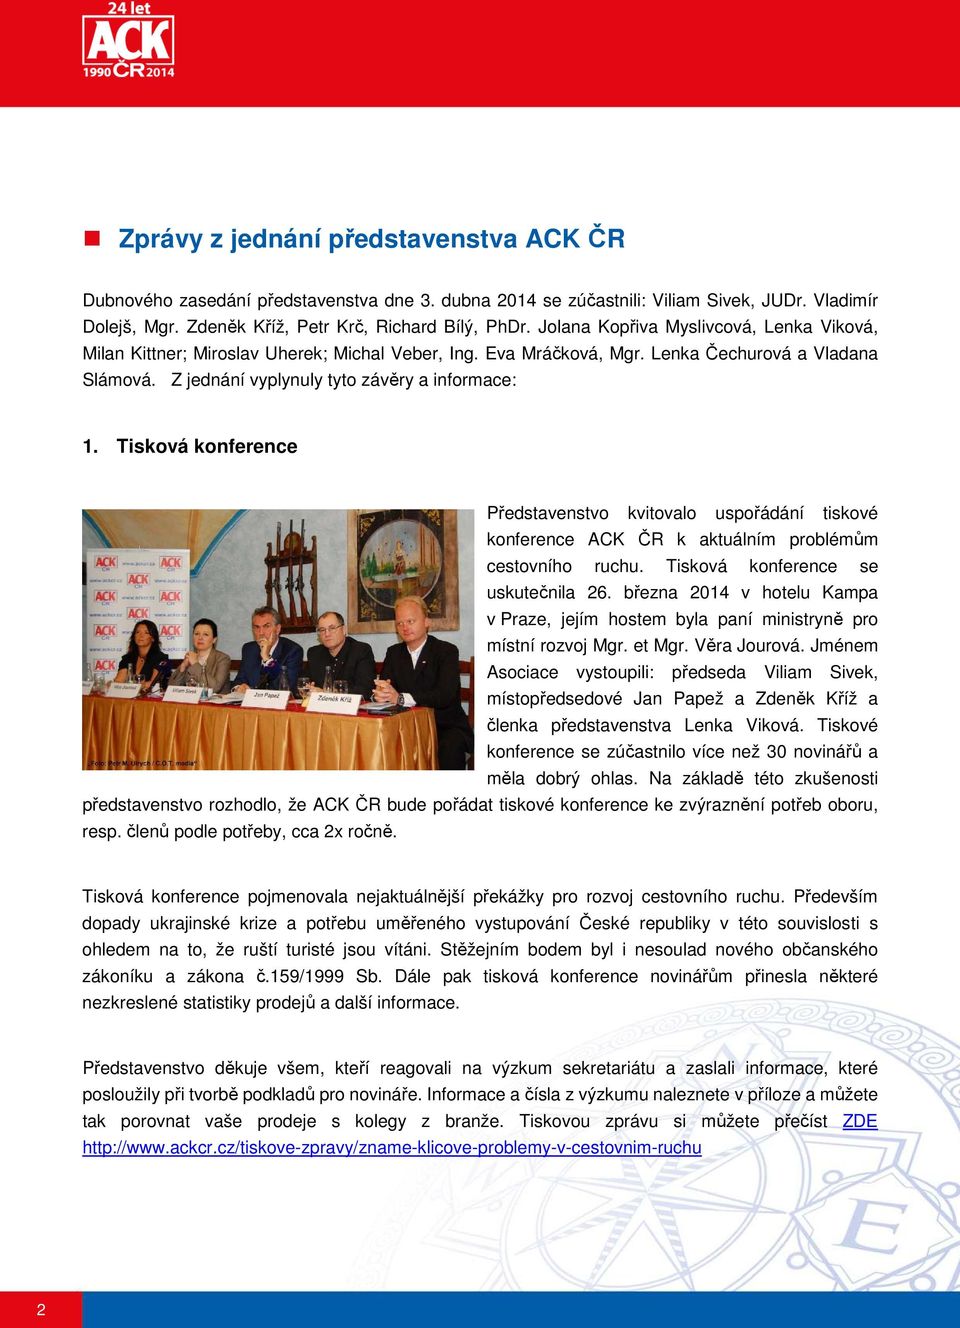 Tisková konference Představenstvo kvitovalo uspořádání tiskové konference ACK ČR k aktuálním problémům cestovního ruchu. Tisková konference se uskutečnila 26.